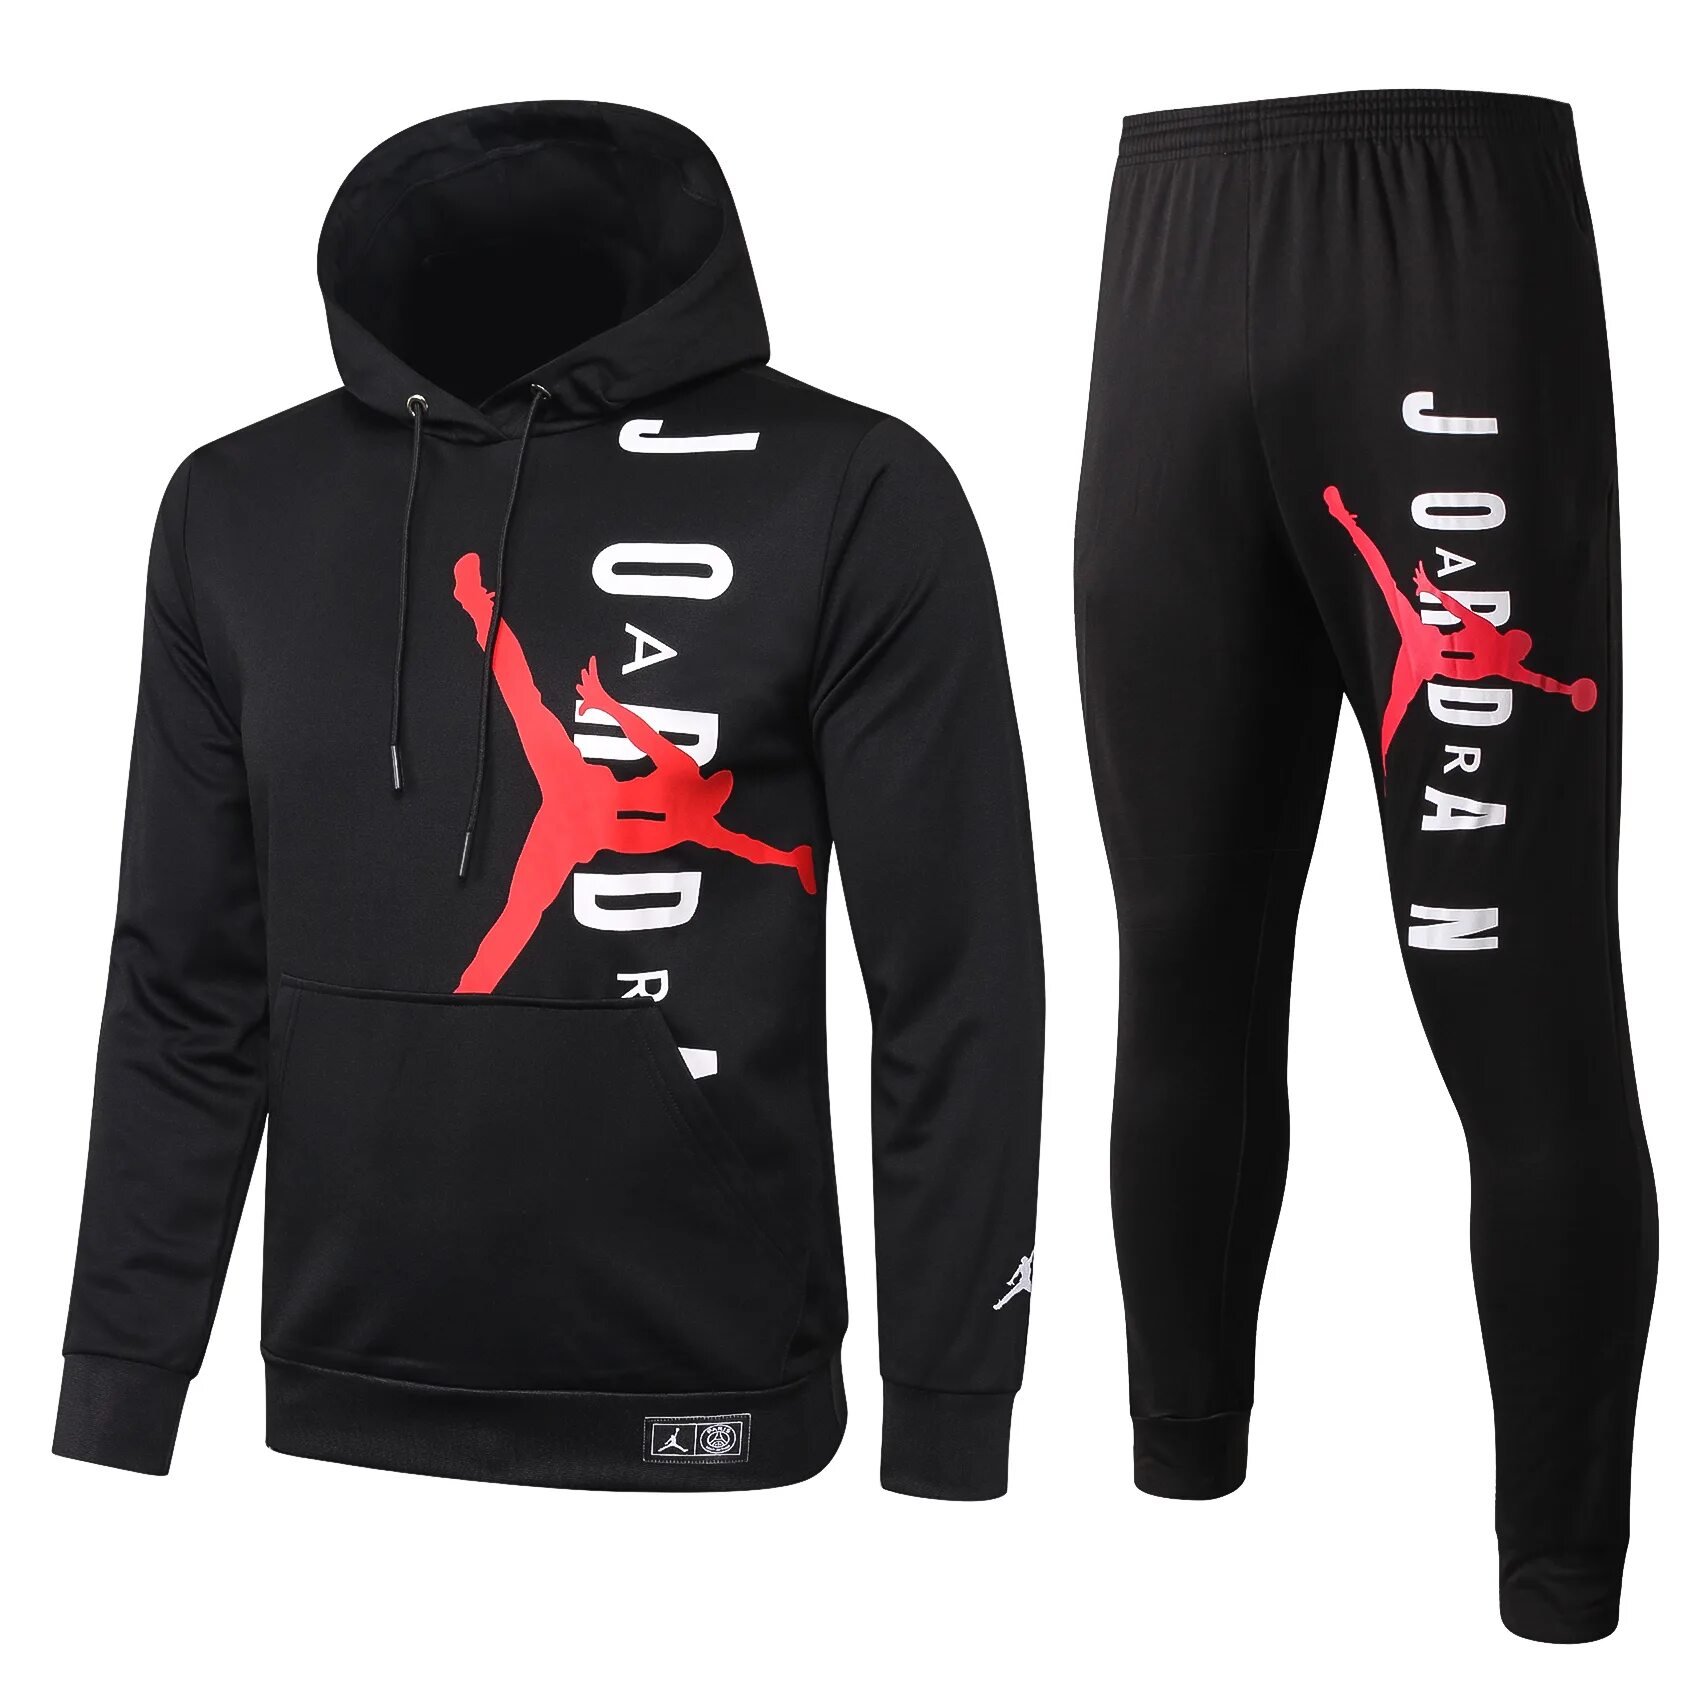 Jordan PSG костюм. Спортивный костюм ПСЖ PSG Jordan 20/21. Спортивный костюм Nike Air Jordan FC PSG.